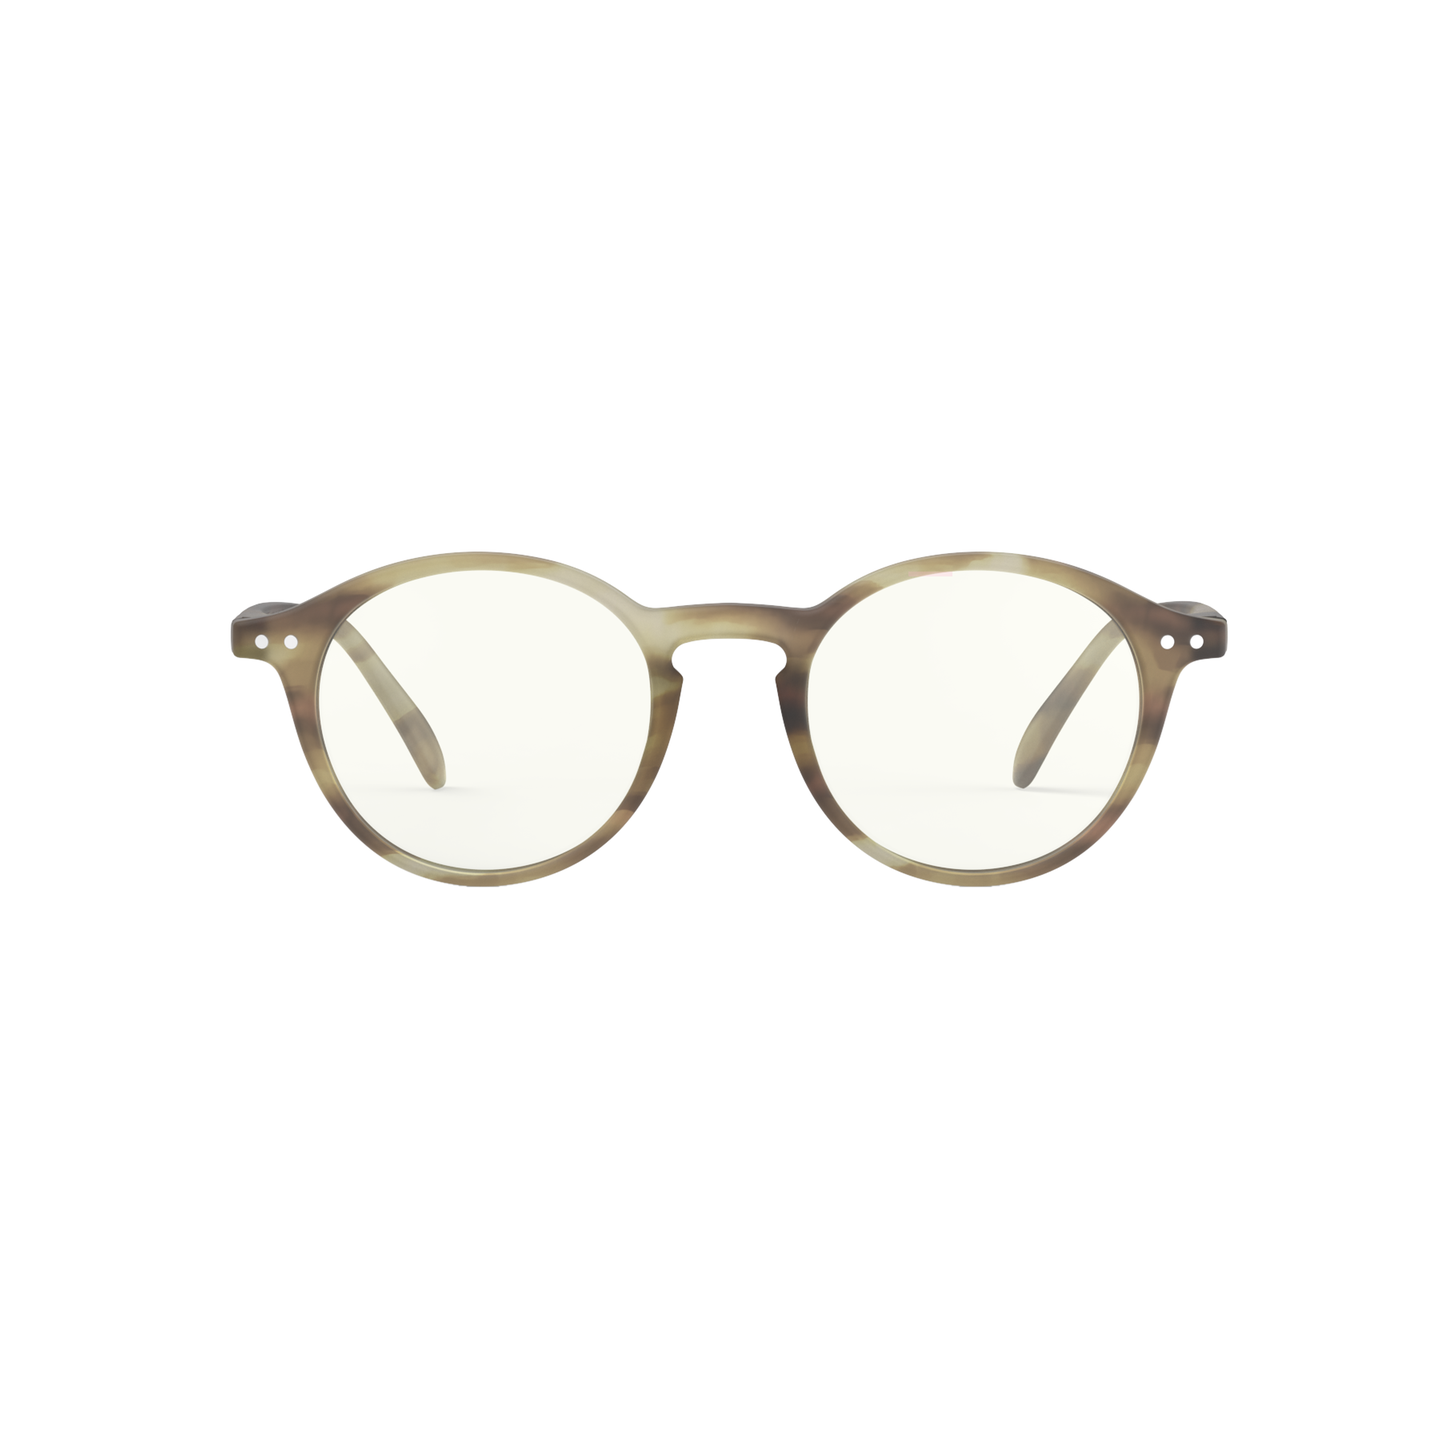 Mit Liebe in Paris designt: Das Brillengestell in "Smoky Brown" von Izipizi besticht vor allem durch die coolen, runden Gläser. Kostenpunkt: etwa 35 Euro.